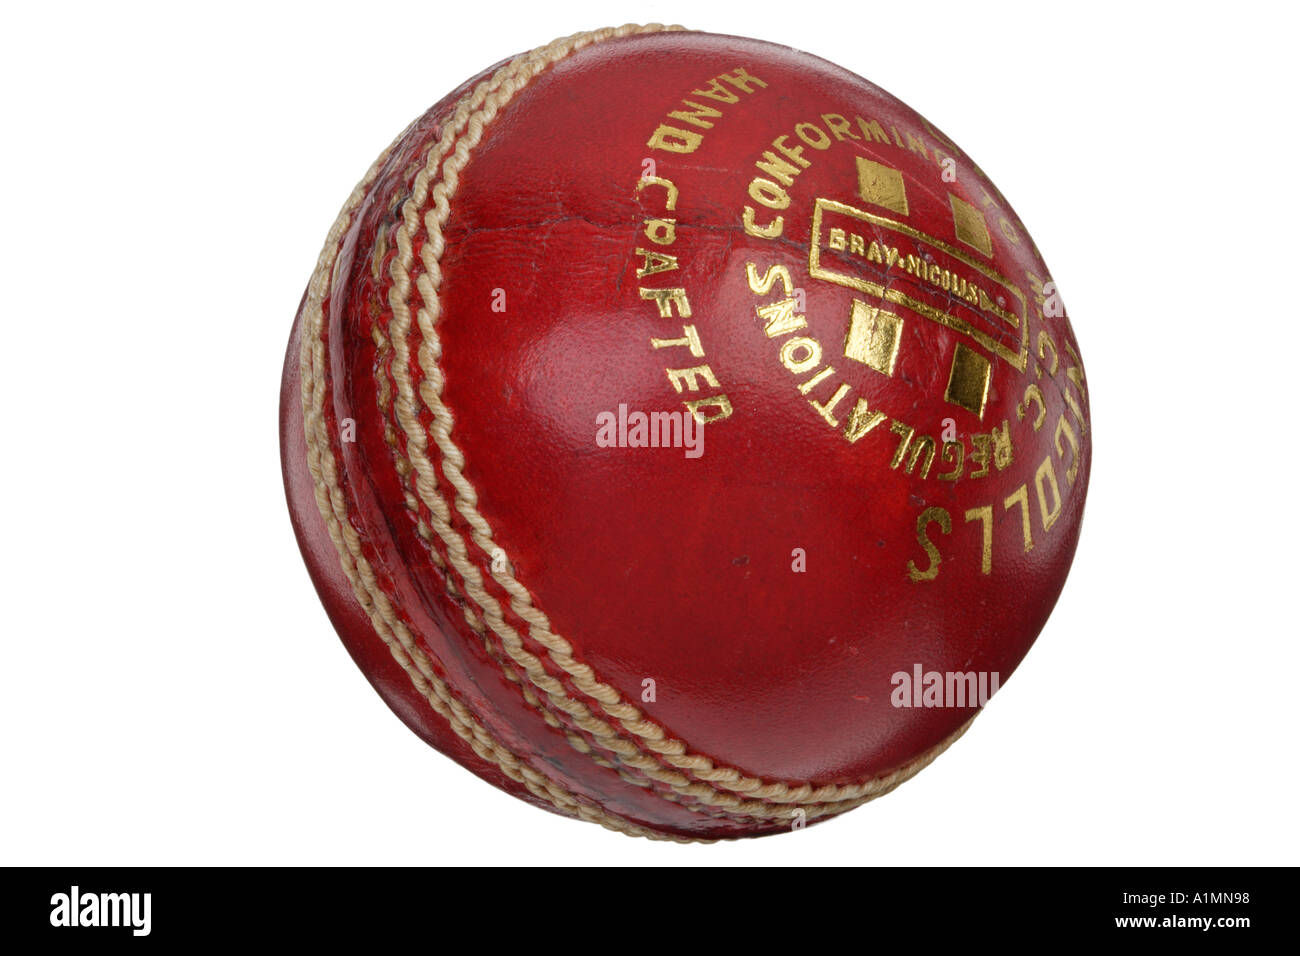 Balle de Cricket à la main en cuir rouge Gray Nicolls coupé de Cricket ball on white Banque D'Images